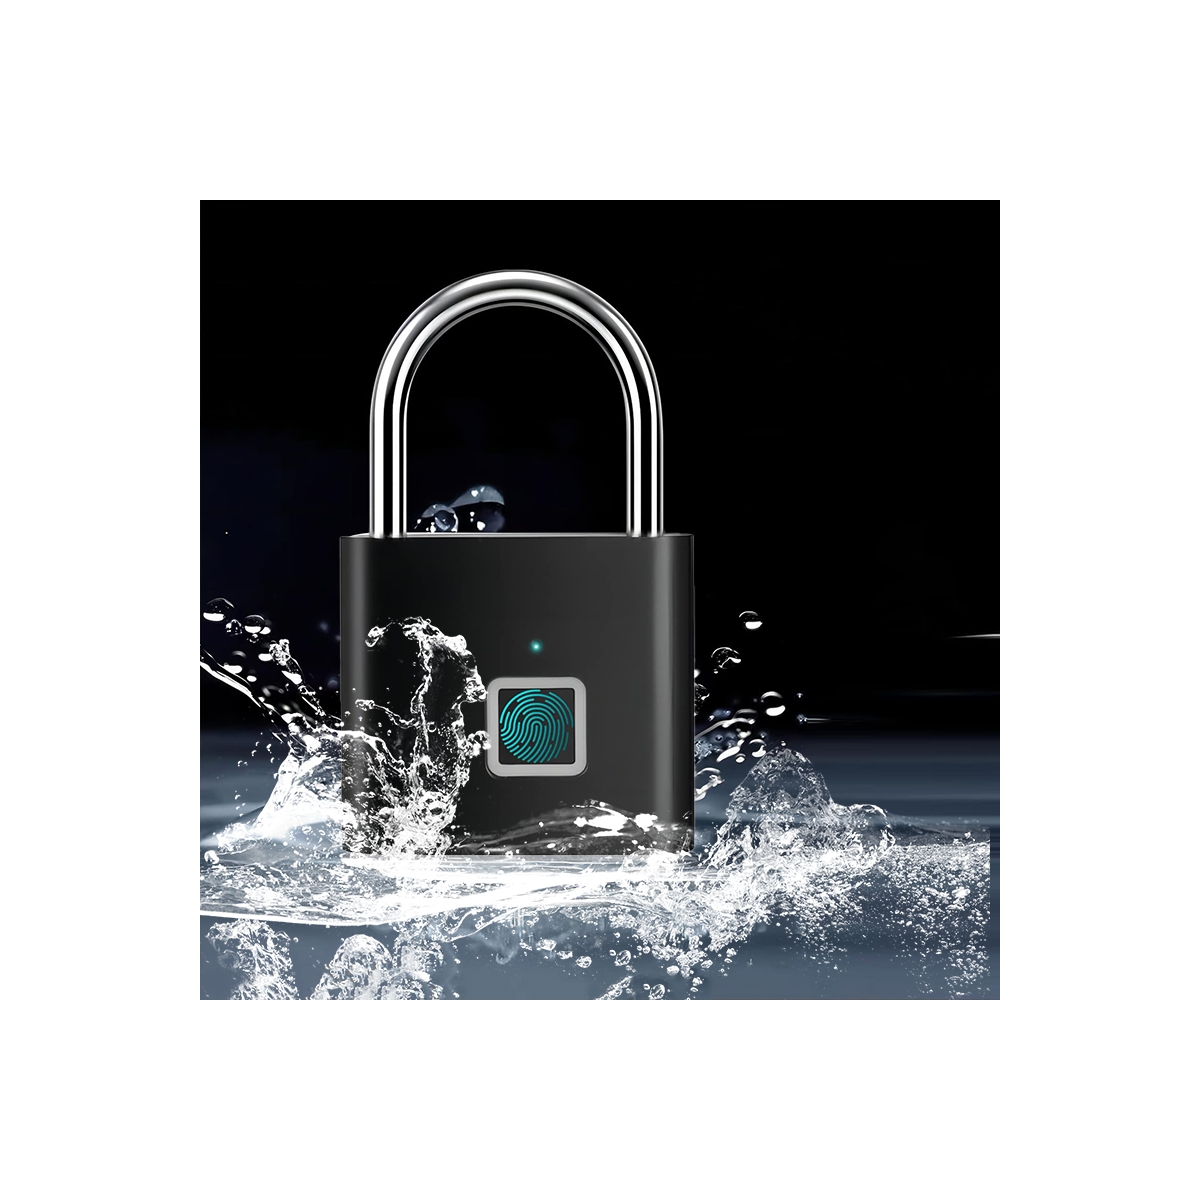 T11 - Smart fingerprint padlock